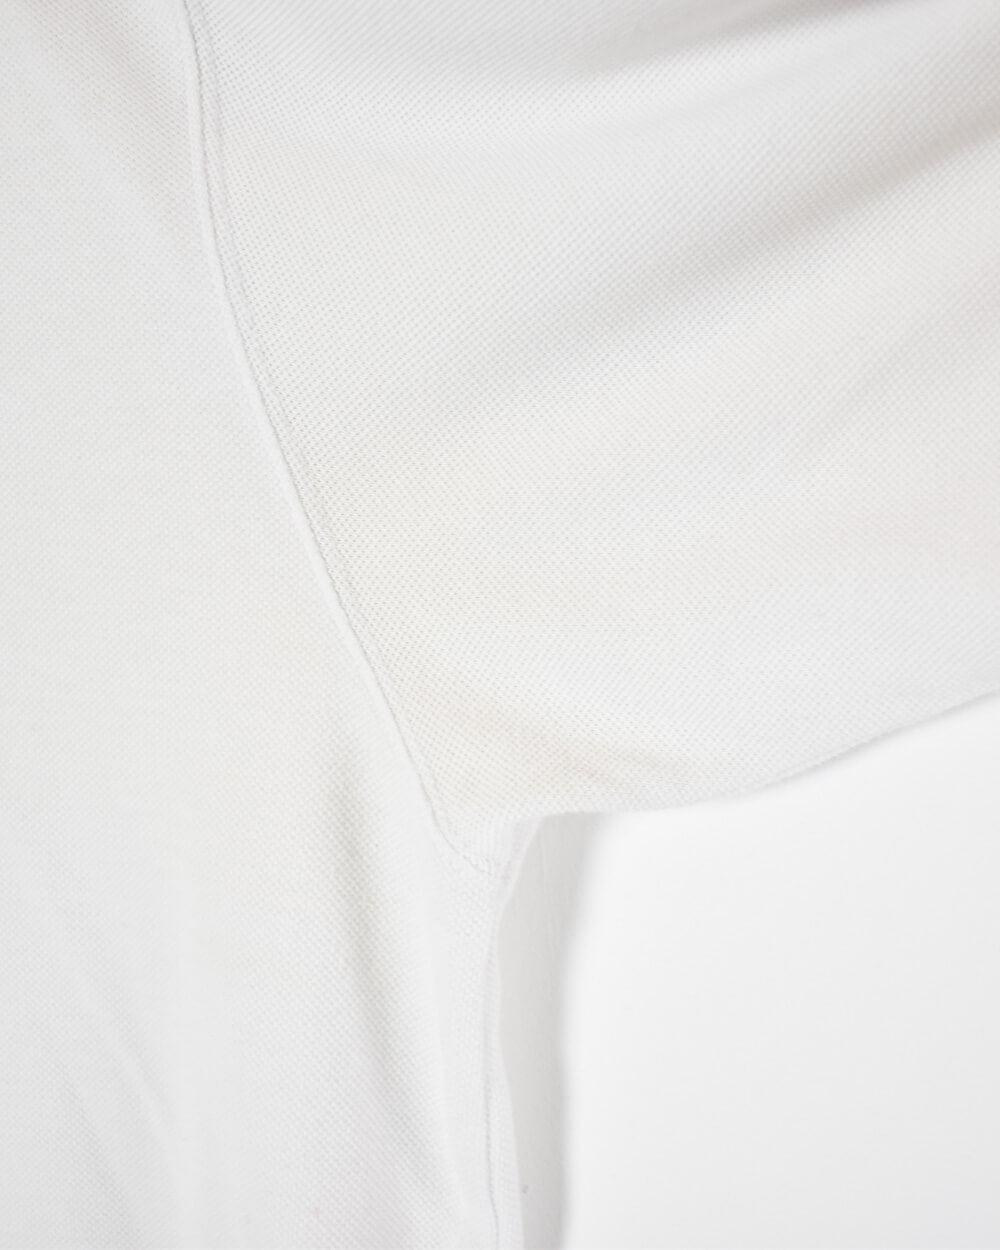 White Adidas Polo Shirt - Large